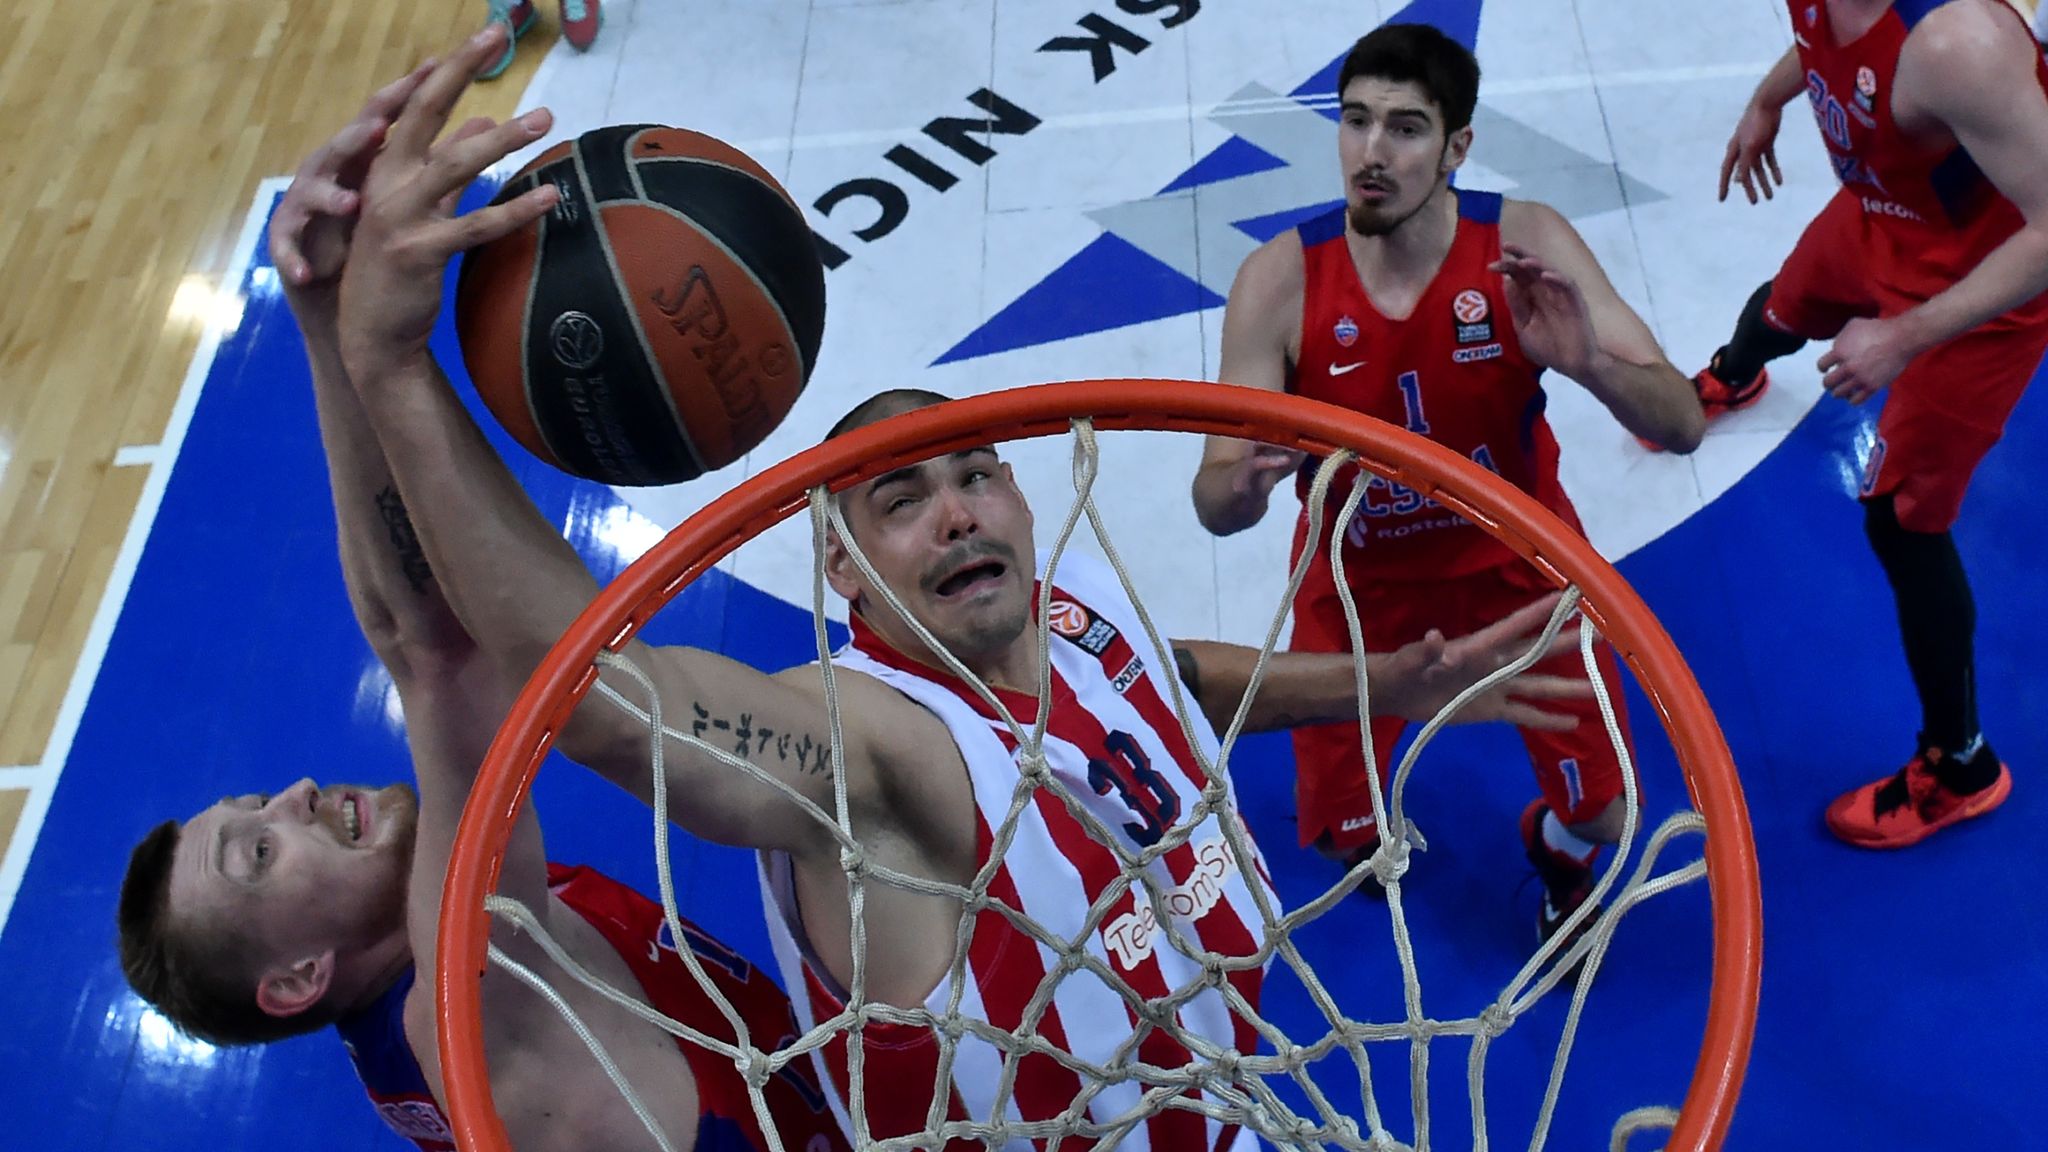 WATCH Top 10 EuroLeague plays Basketball News Sky Sports